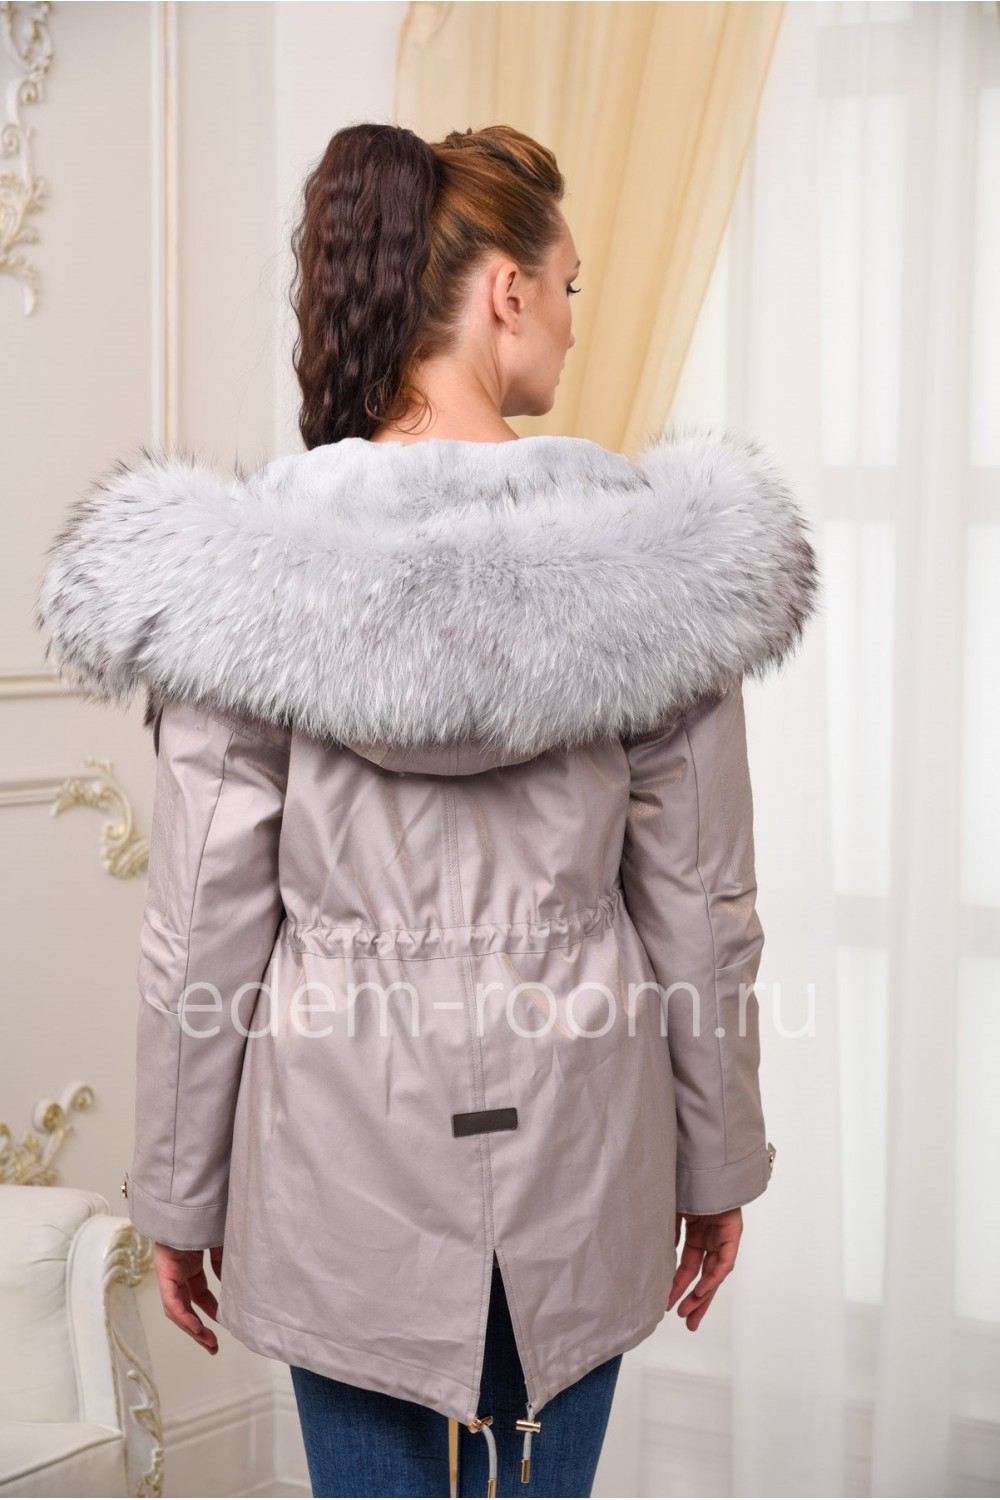 Современная куртка-парка с мехом енота